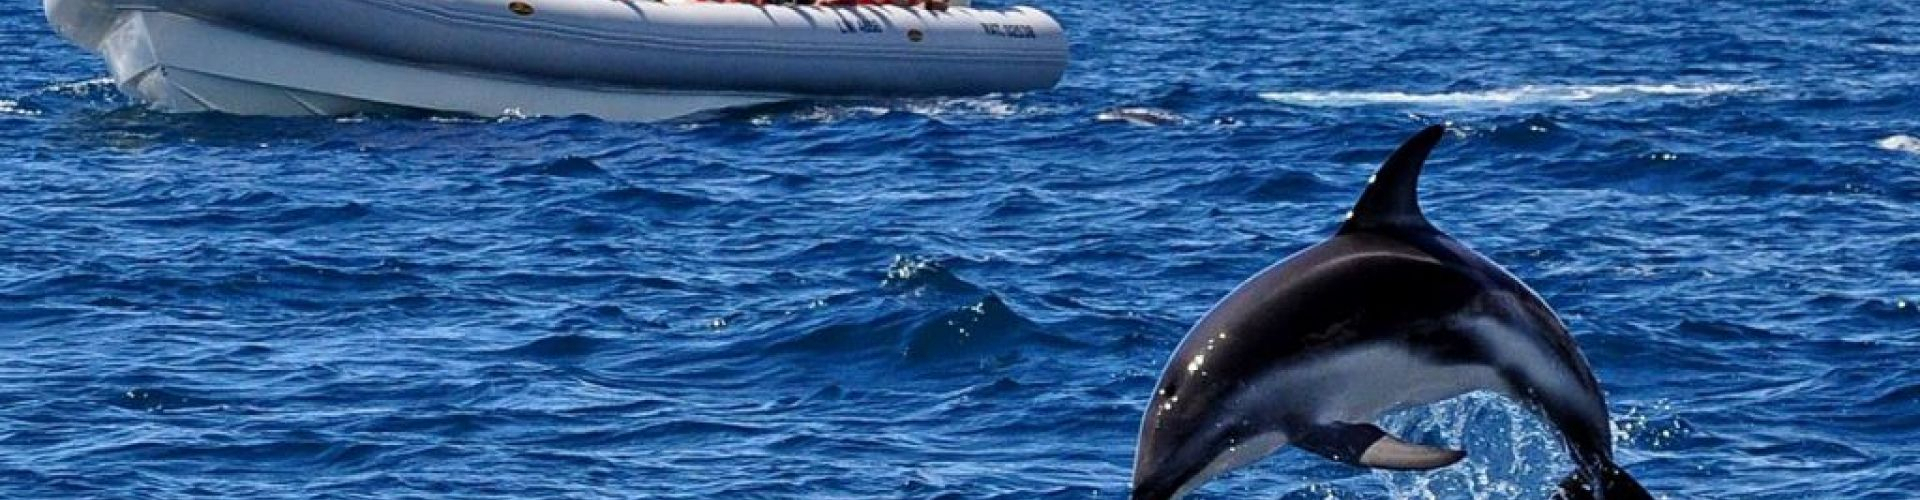 Avistaje de delfines en Puerto Madryn